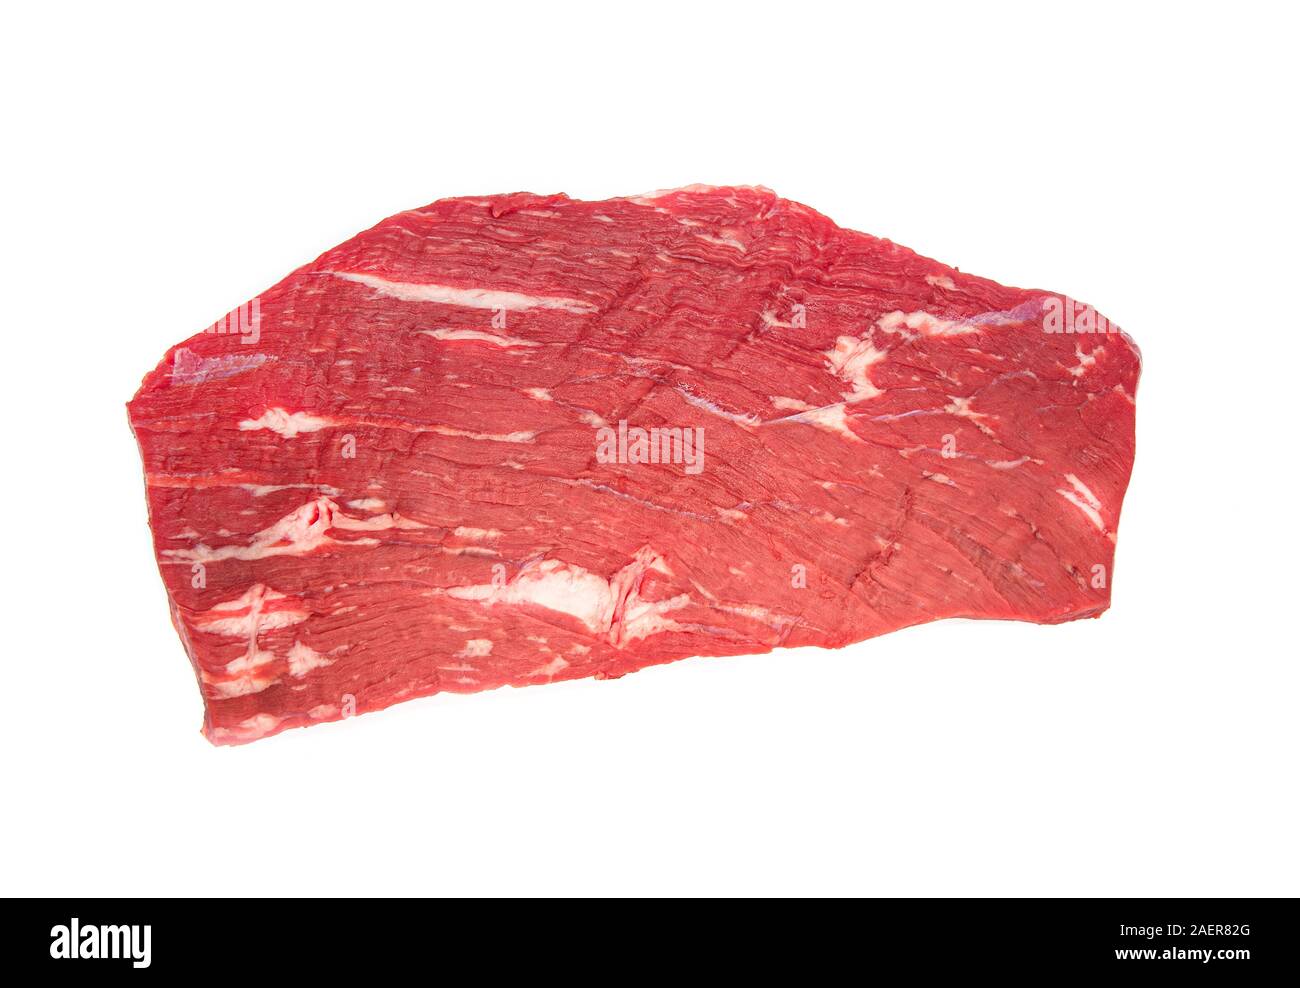 Rohes Rindfleisch Steak, frische rohe Stück Rindfleisch Steak isoliert auf weißem Hintergrund Stockfoto